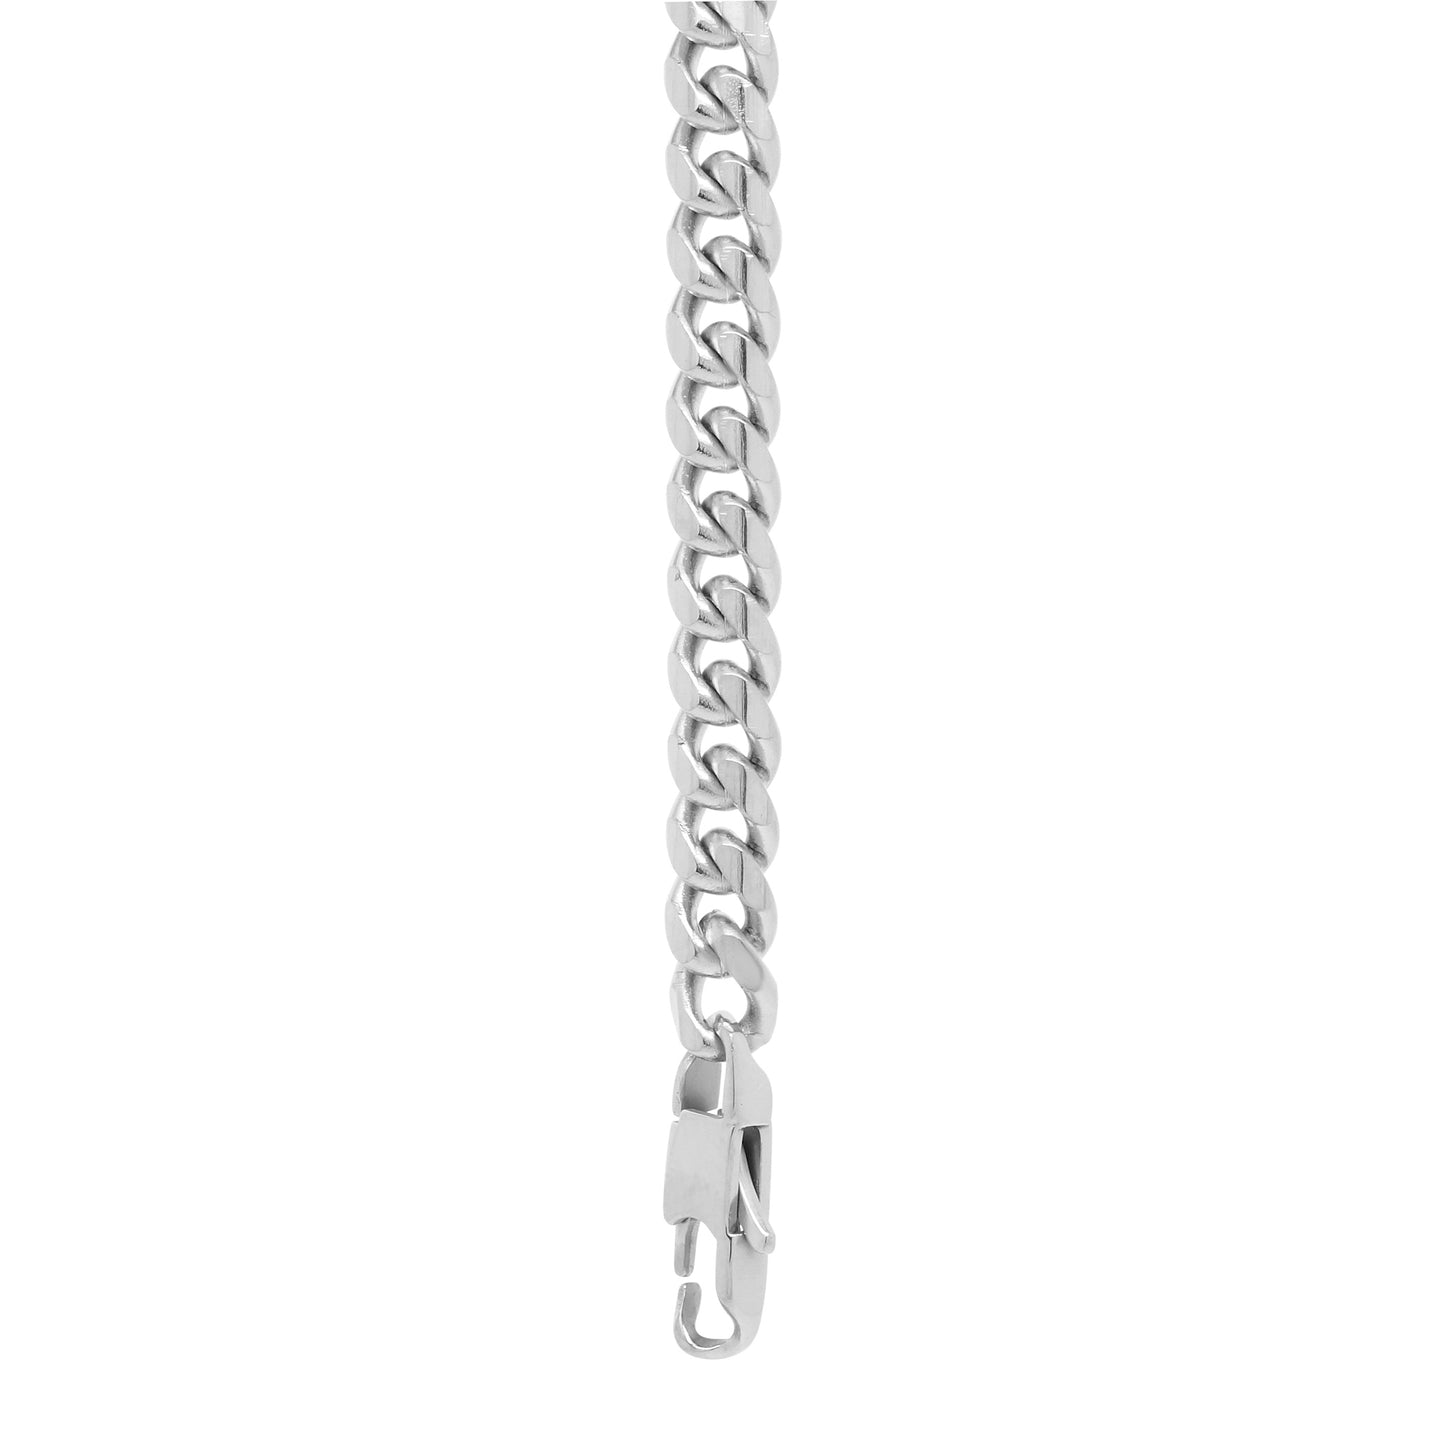 5mm Chain Bracelet - Silver